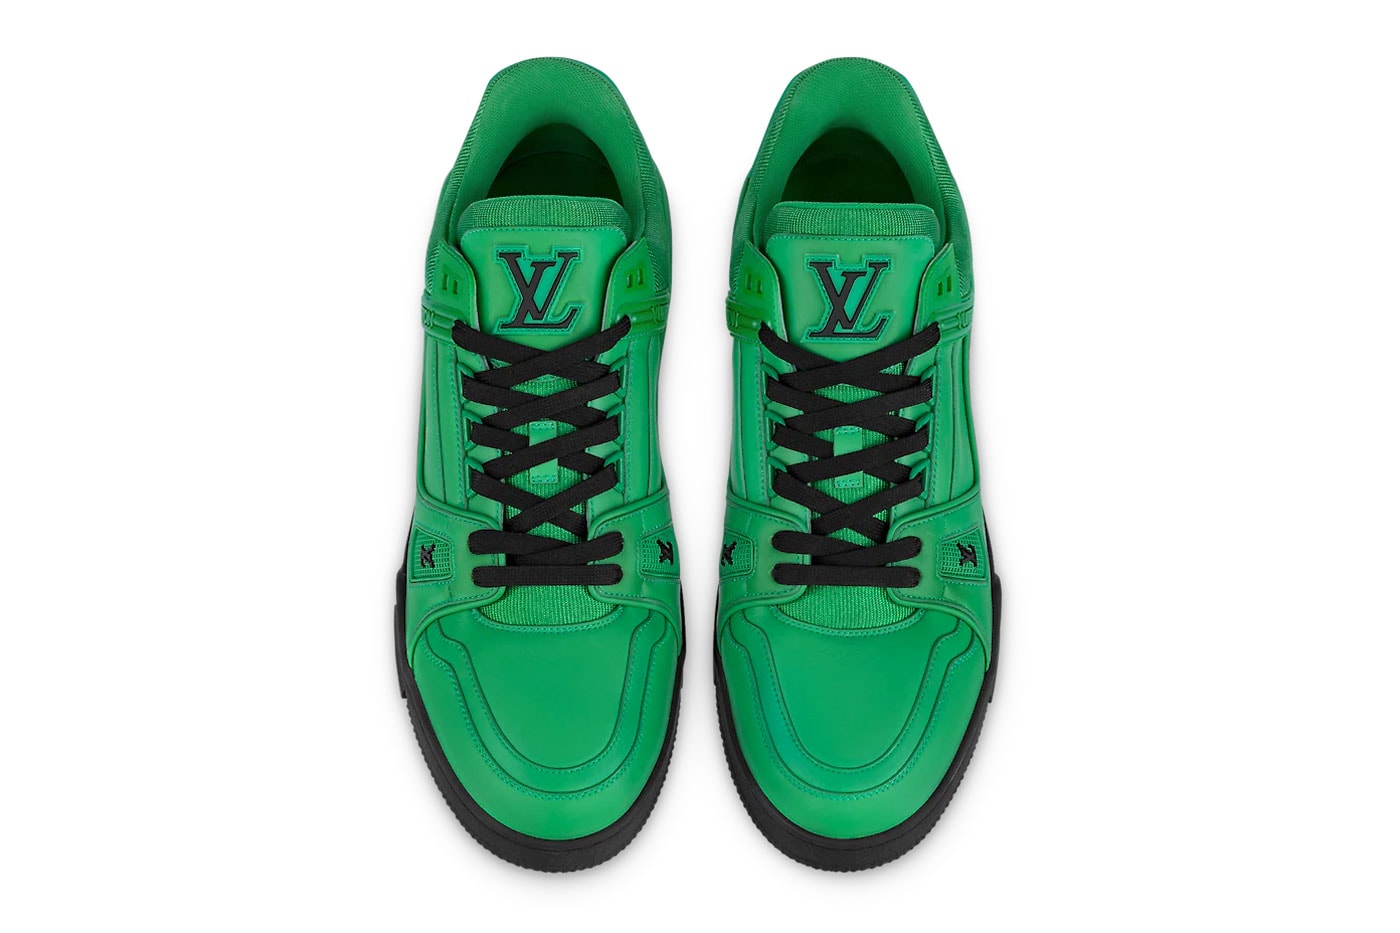 Louis Vuitton LV Trainer Sneaker Tonal Color Collection virgil abloh sneakers footwar LV2 Nigo shoes fashion paris skate 